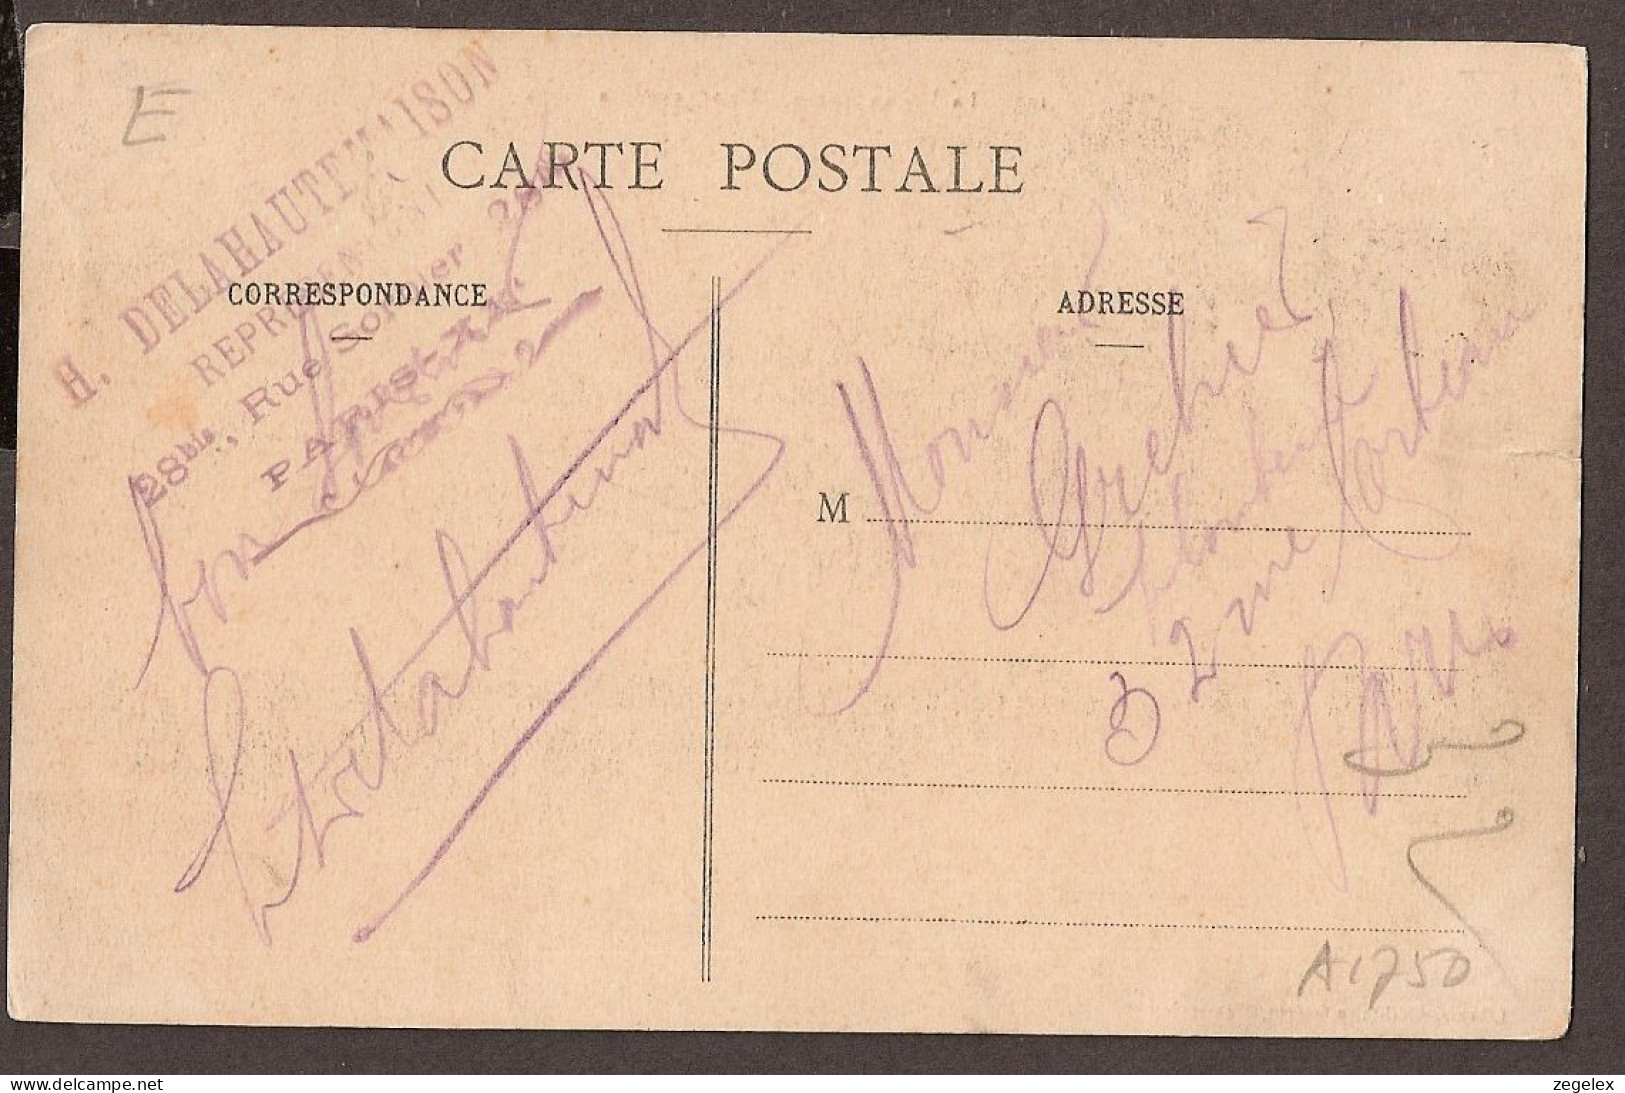 La Vie Au Camp - Une Revue De Pieds. 1911 - Soldats - Librairie Militaire Guérin, Mourmelon - Autres & Non Classés